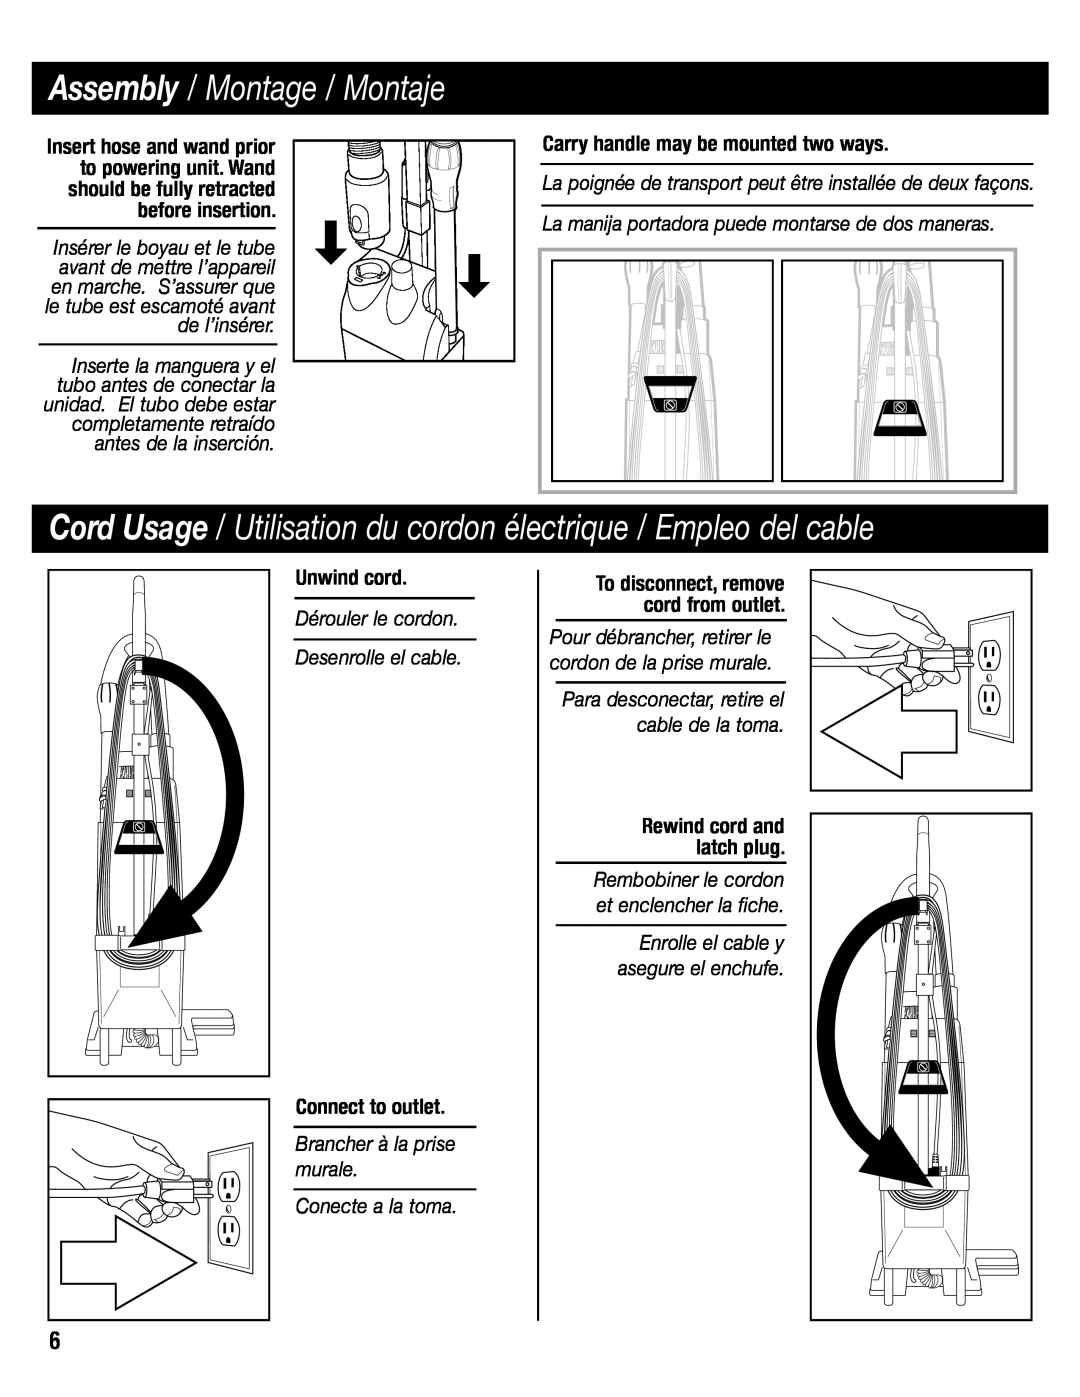 Sanitaire SC6600 manual Cord Usage / Utilisation du cordon électrique / Empleo del cable, Assembly / Montage / Montaje 